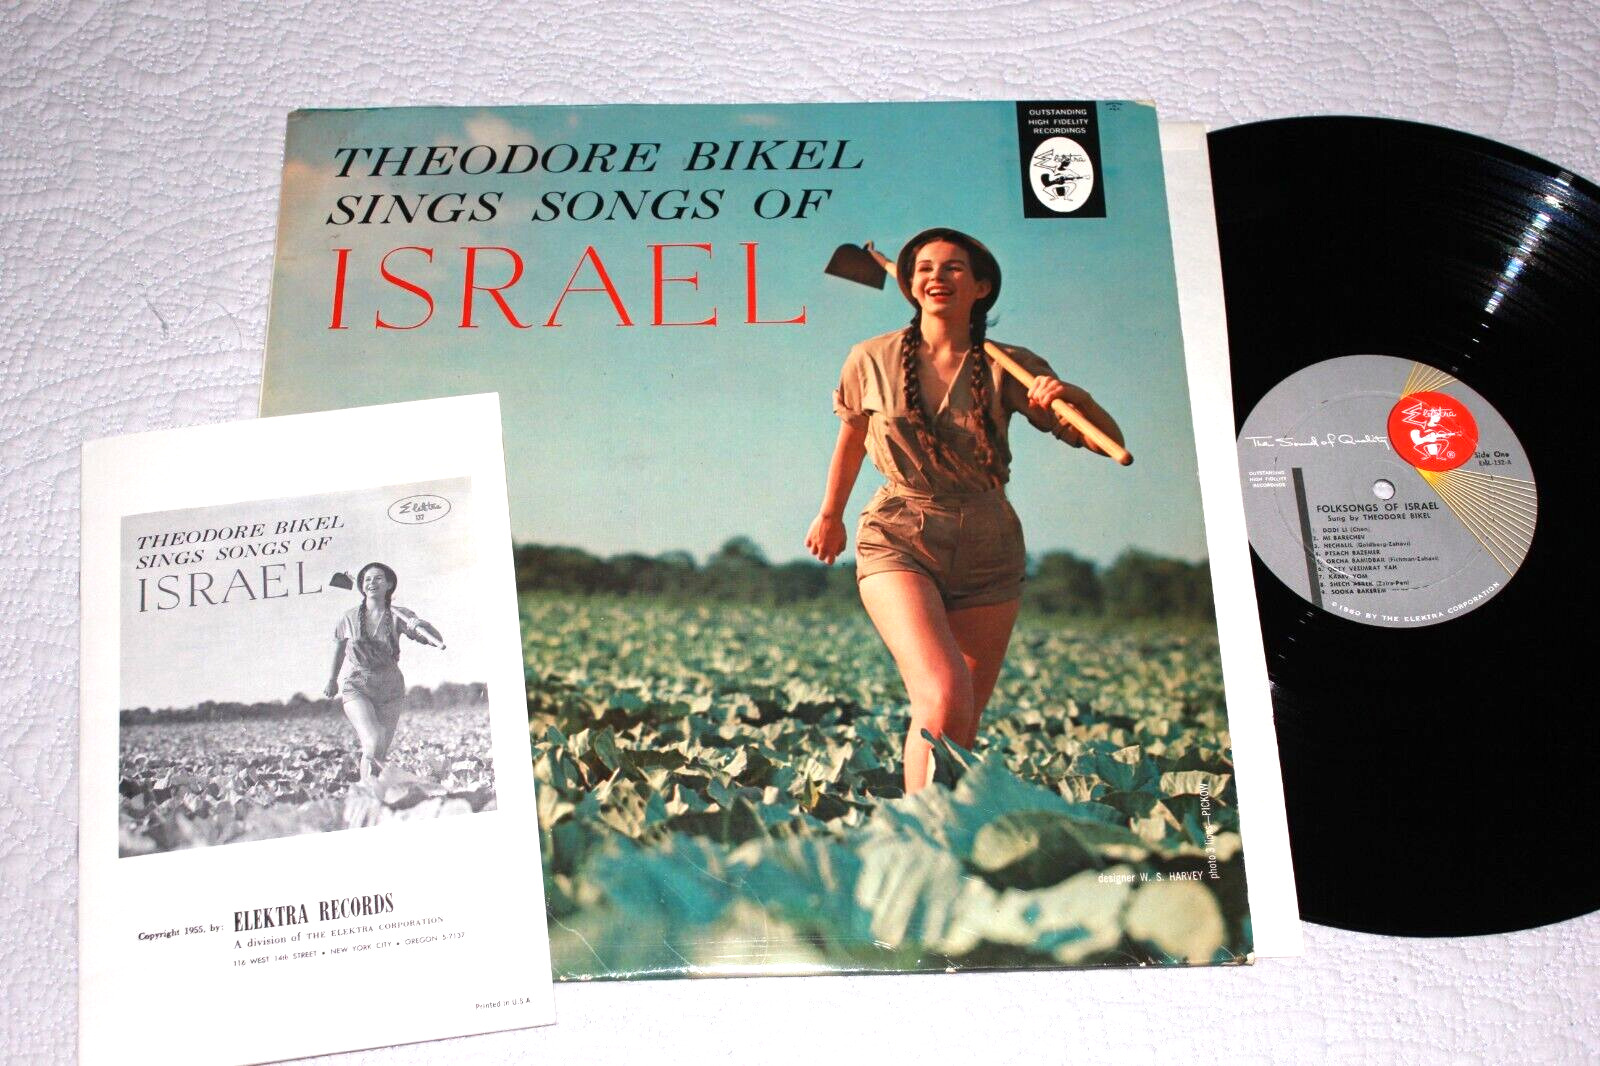 THEODORE BIKEL - Sings Folk Songs of Israel (1960 Vinyl LP + lyric book) EX/EX